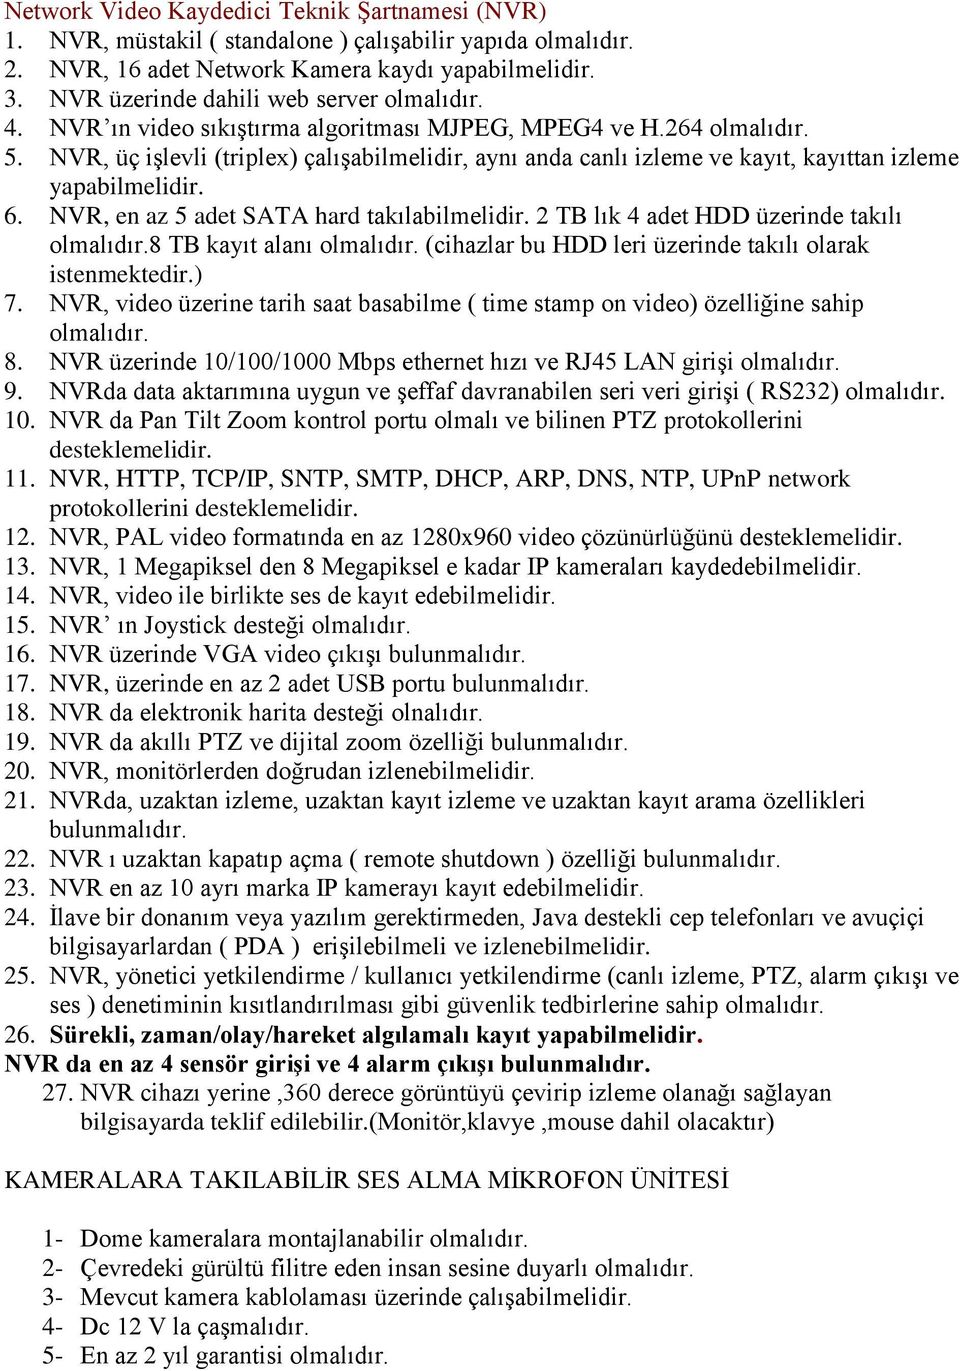 NVR, üç iģlevli (triplex) çalıģabilmelidir, aynı anda canlı izleme ve kayıt, kayıttan izleme yapabilmelidir. 6. NVR, en az 5 adet SATA hard takılabilmelidir.